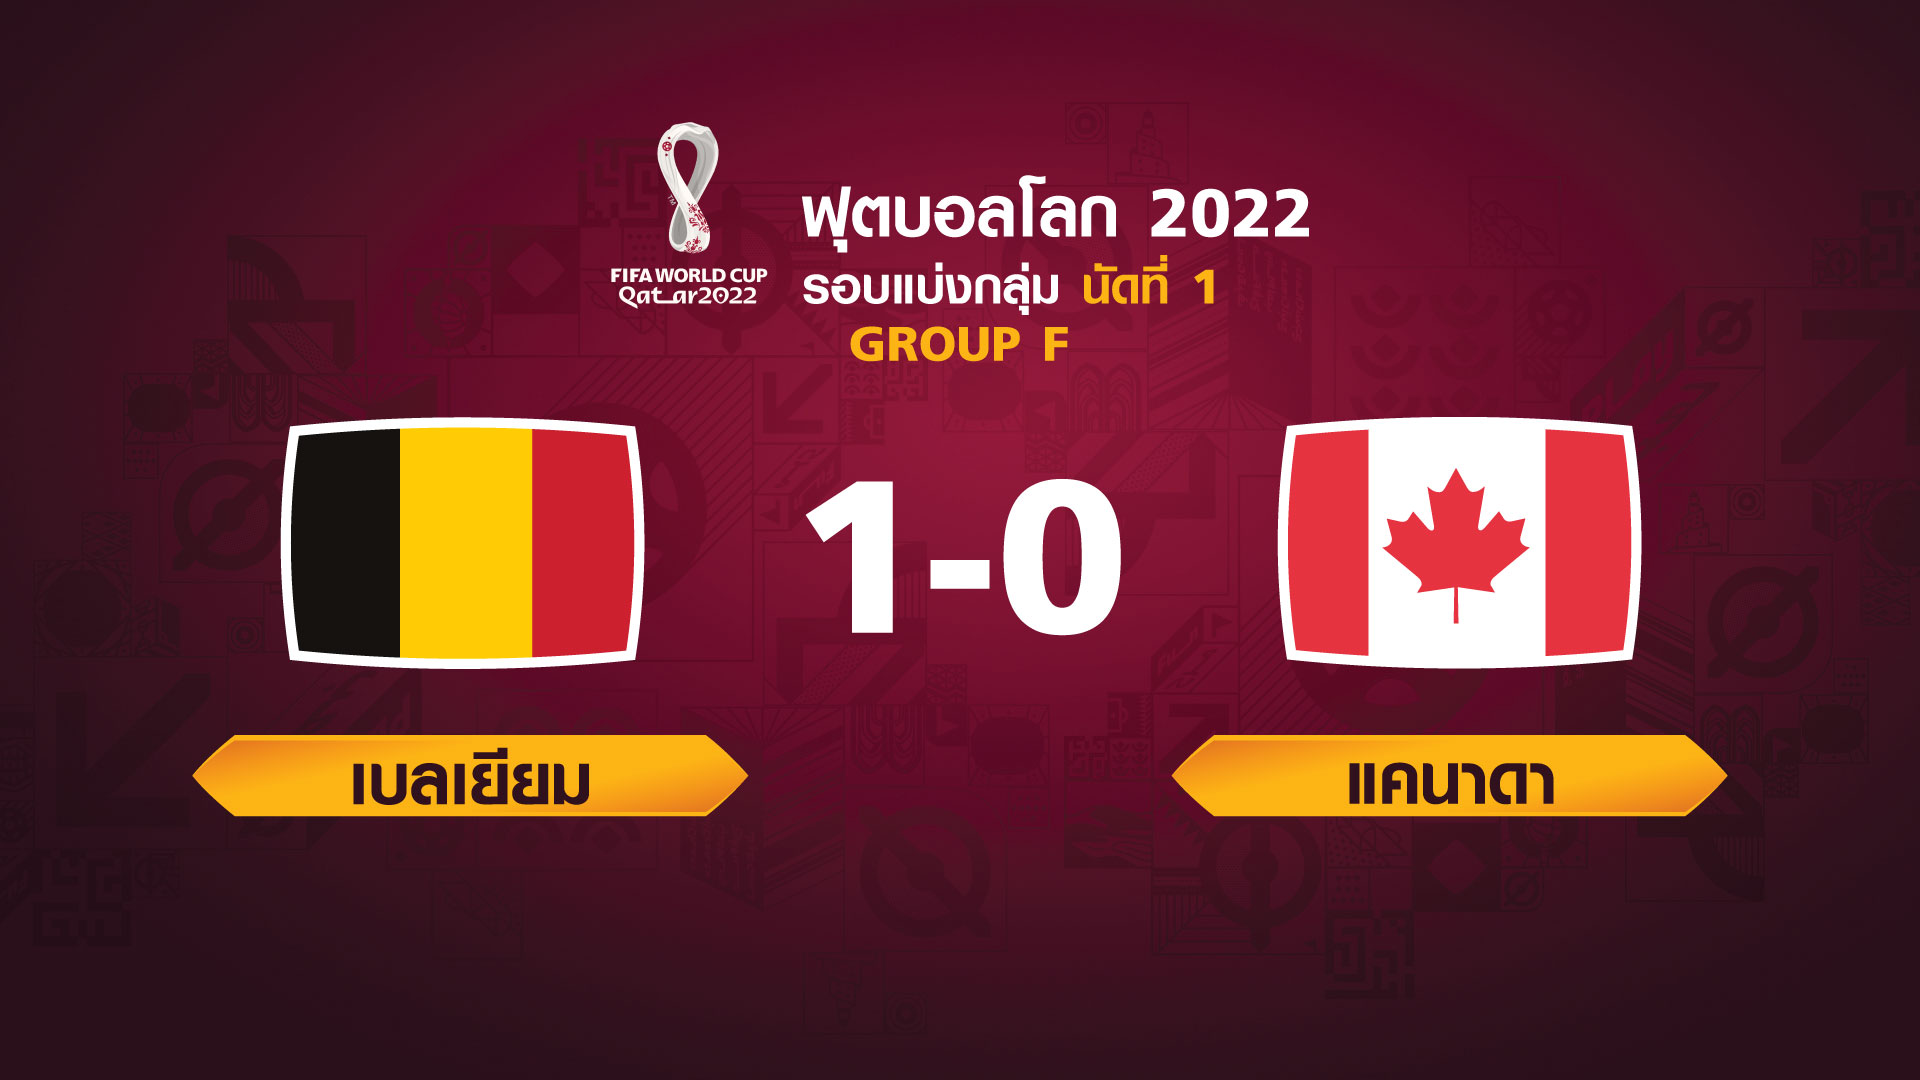 ฟุตบอลโลก 2022 รอบแบ่งกลุ่ม นัดแรก ระหว่าง Belgium vs Canada